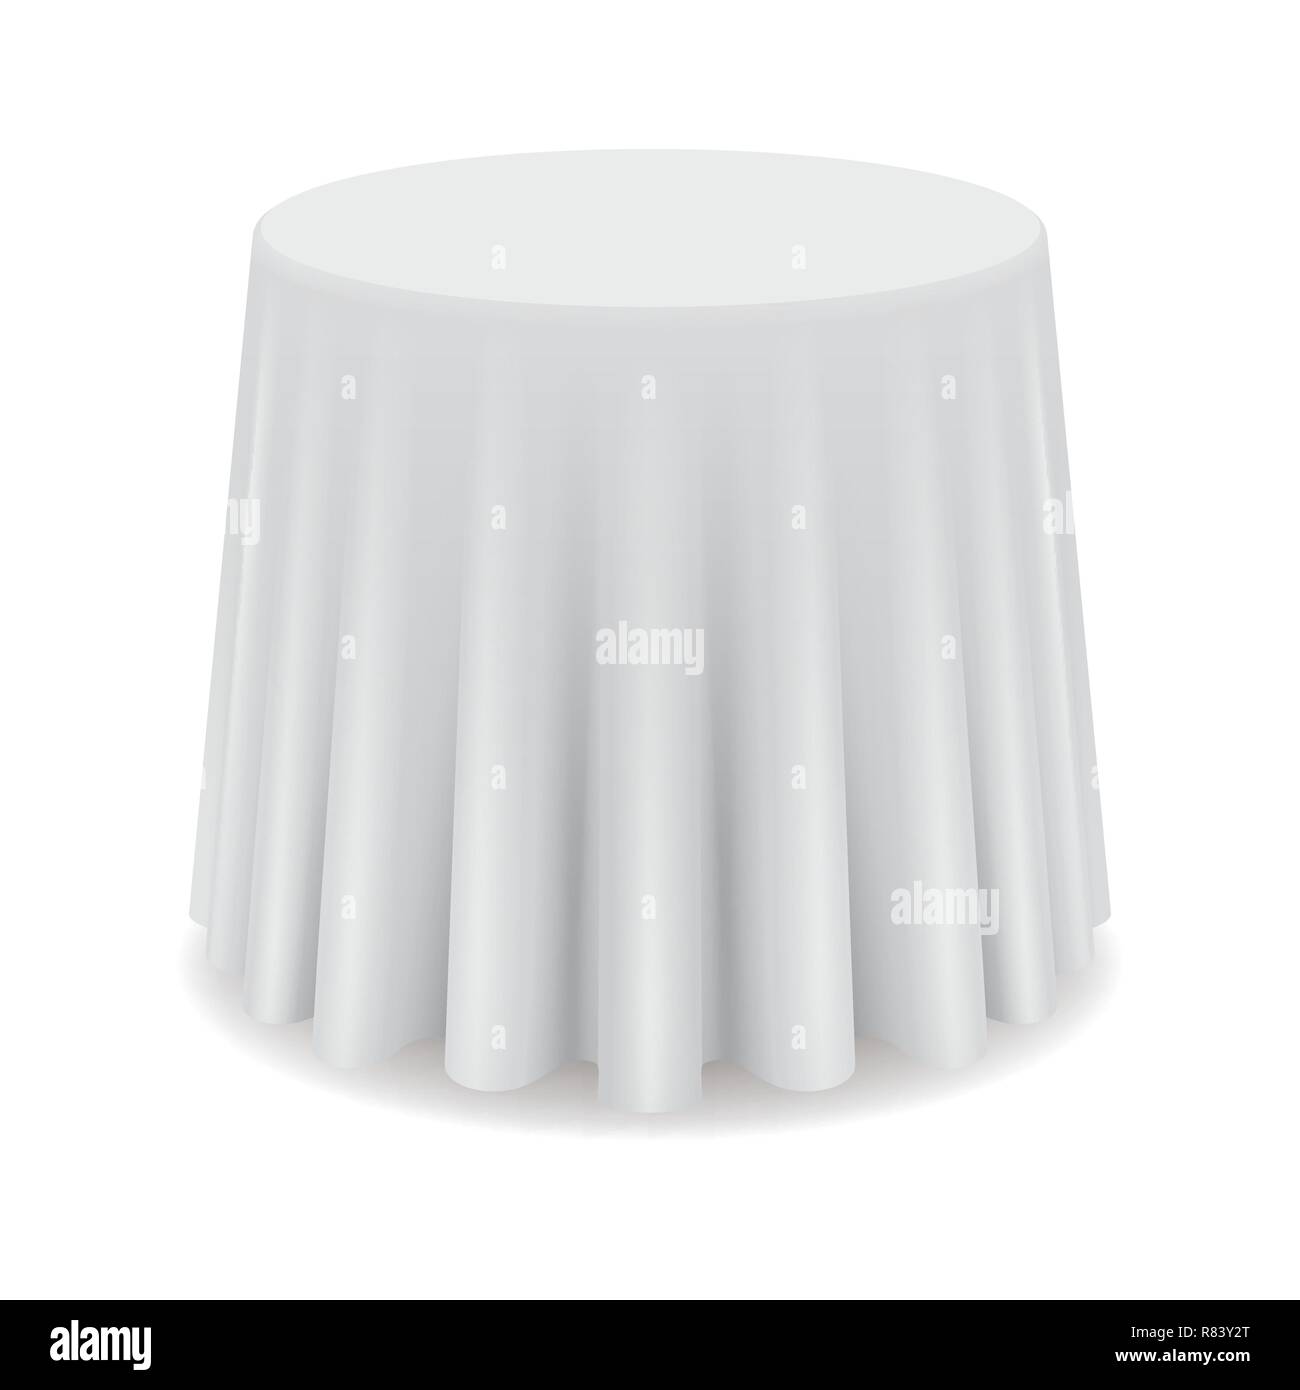 Blanc Ronde table propre, restaurant table ronde avec nappe blanche isolée Illustration de Vecteur